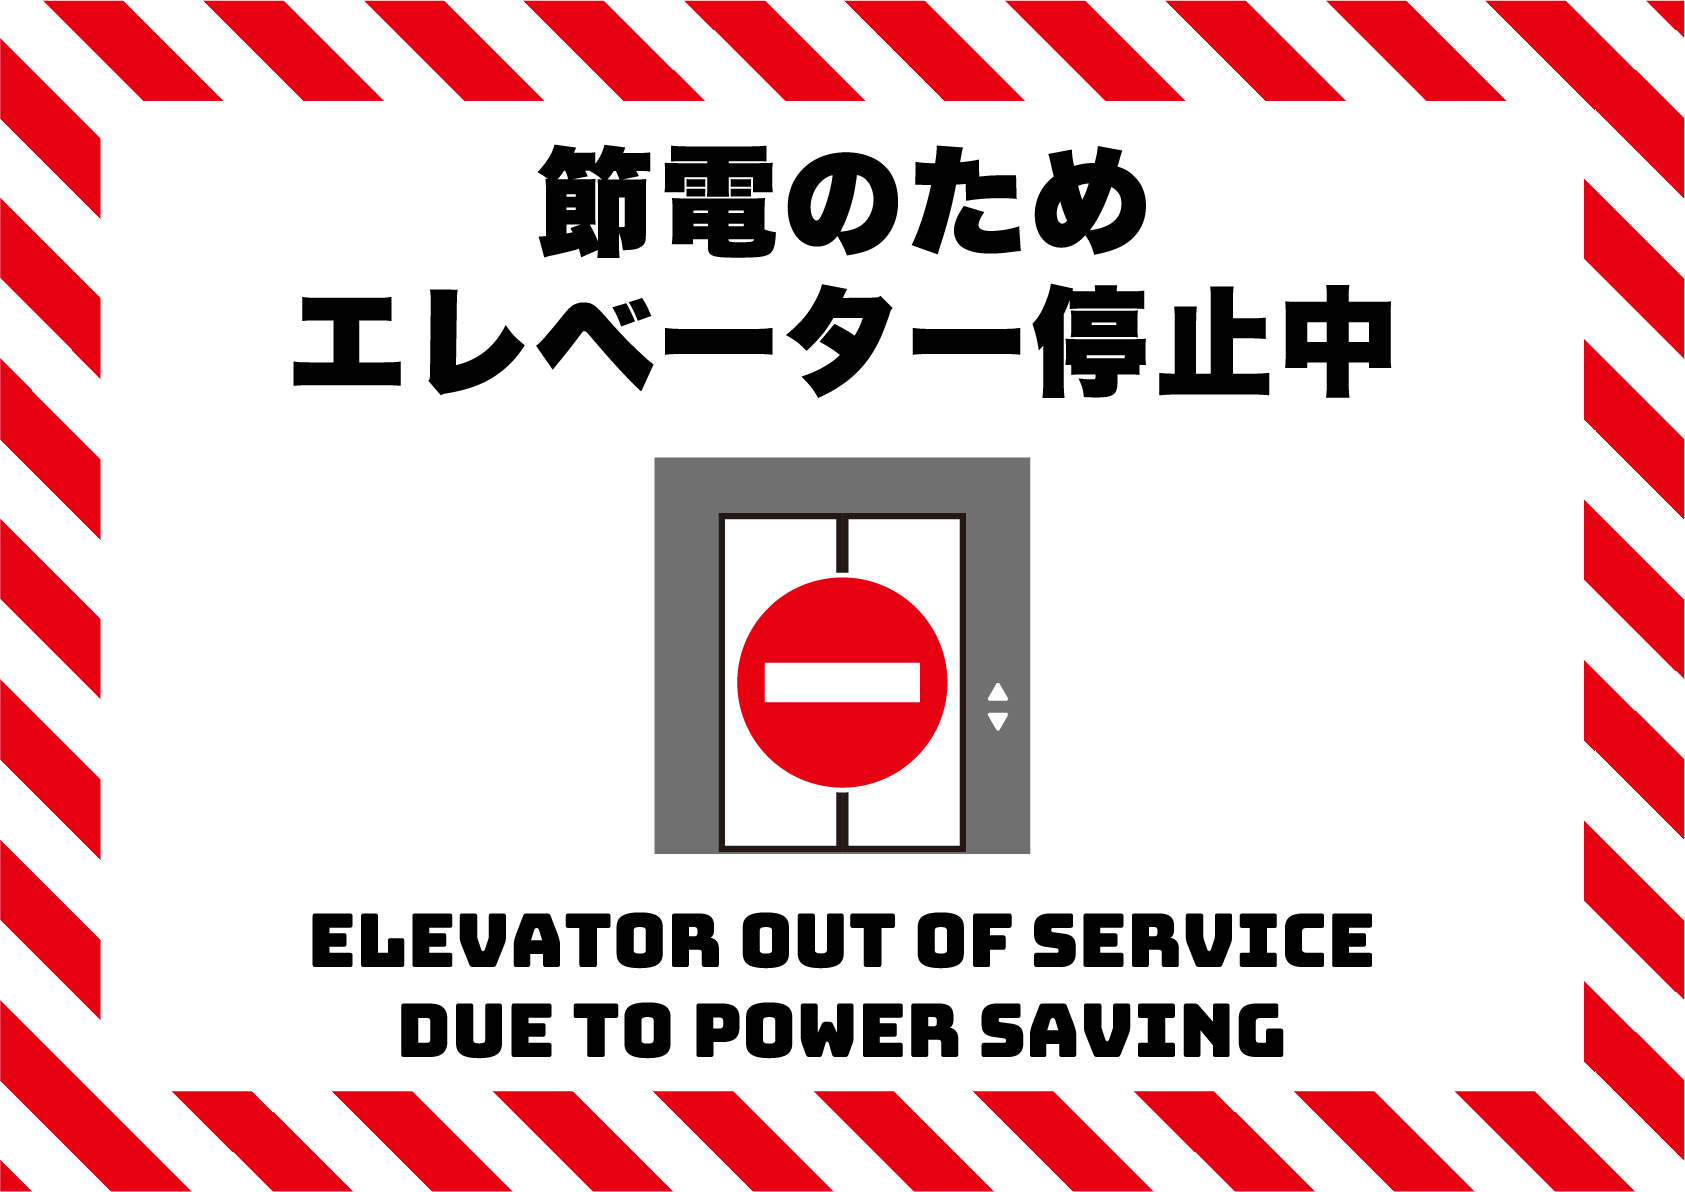 節電のためエレベーター停止中の張り紙